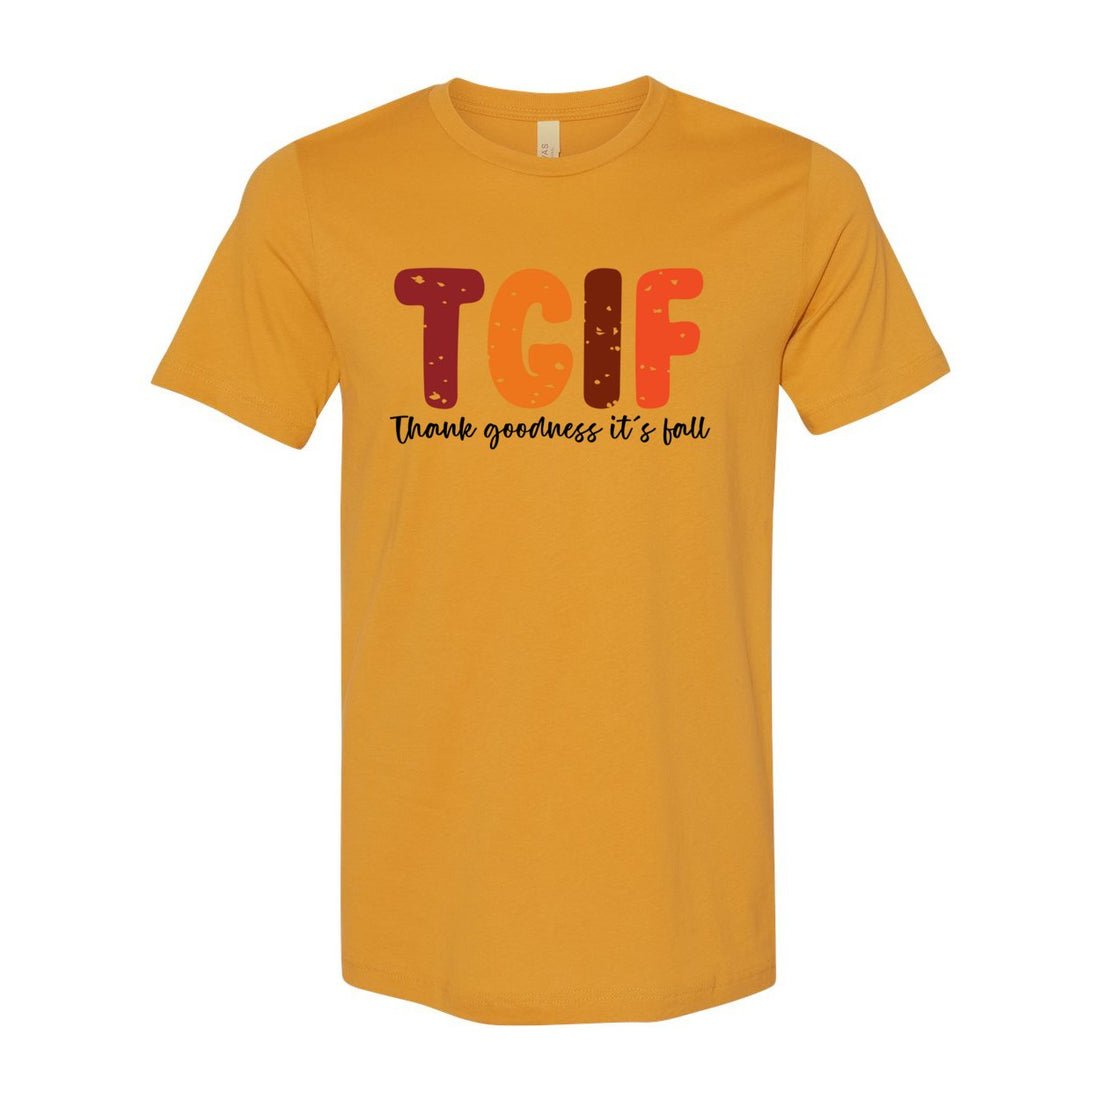 TGIF - T-Shirts - Positively Sassy - TGIF